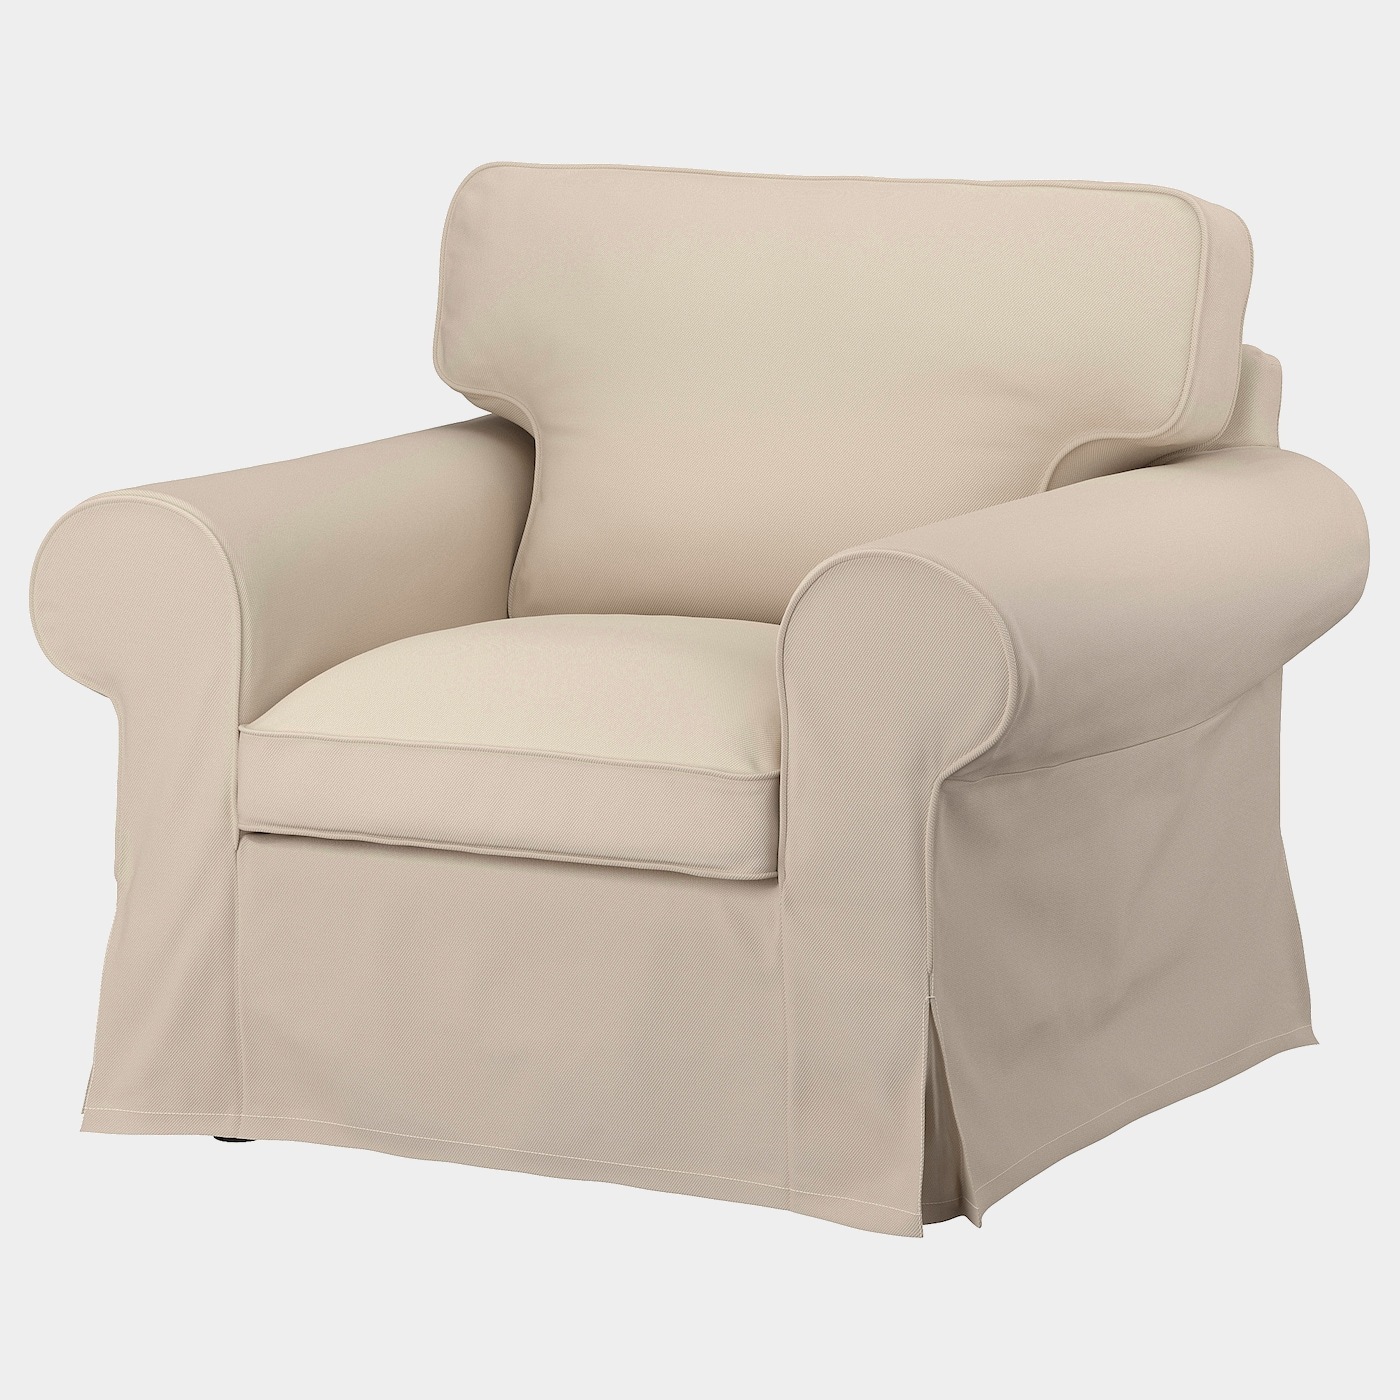 EKTORP Sessel  -  - Möbel Ideen für dein Zuhause von Home Trends. Möbel Trends von Social Media Influencer für dein Skandi Zuhause.